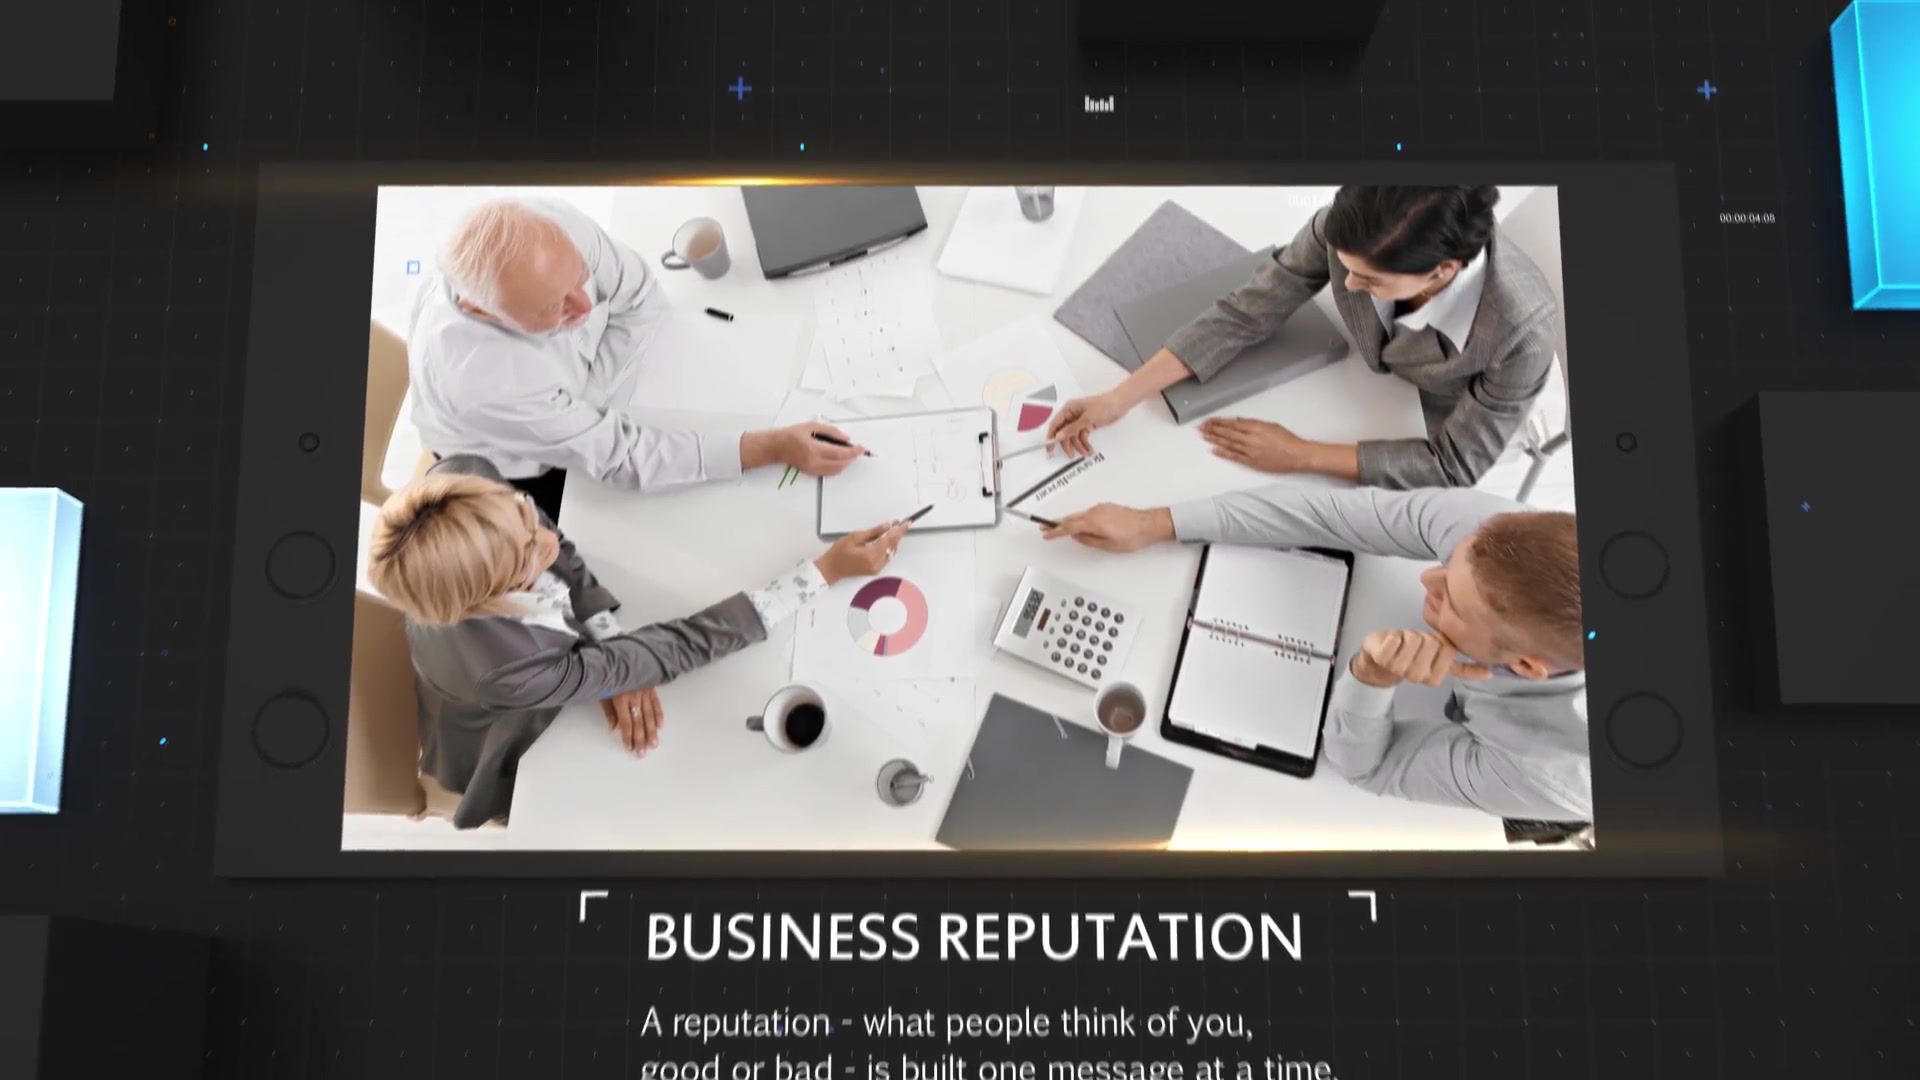 Corporate Presentation - Download Videohive 20291644